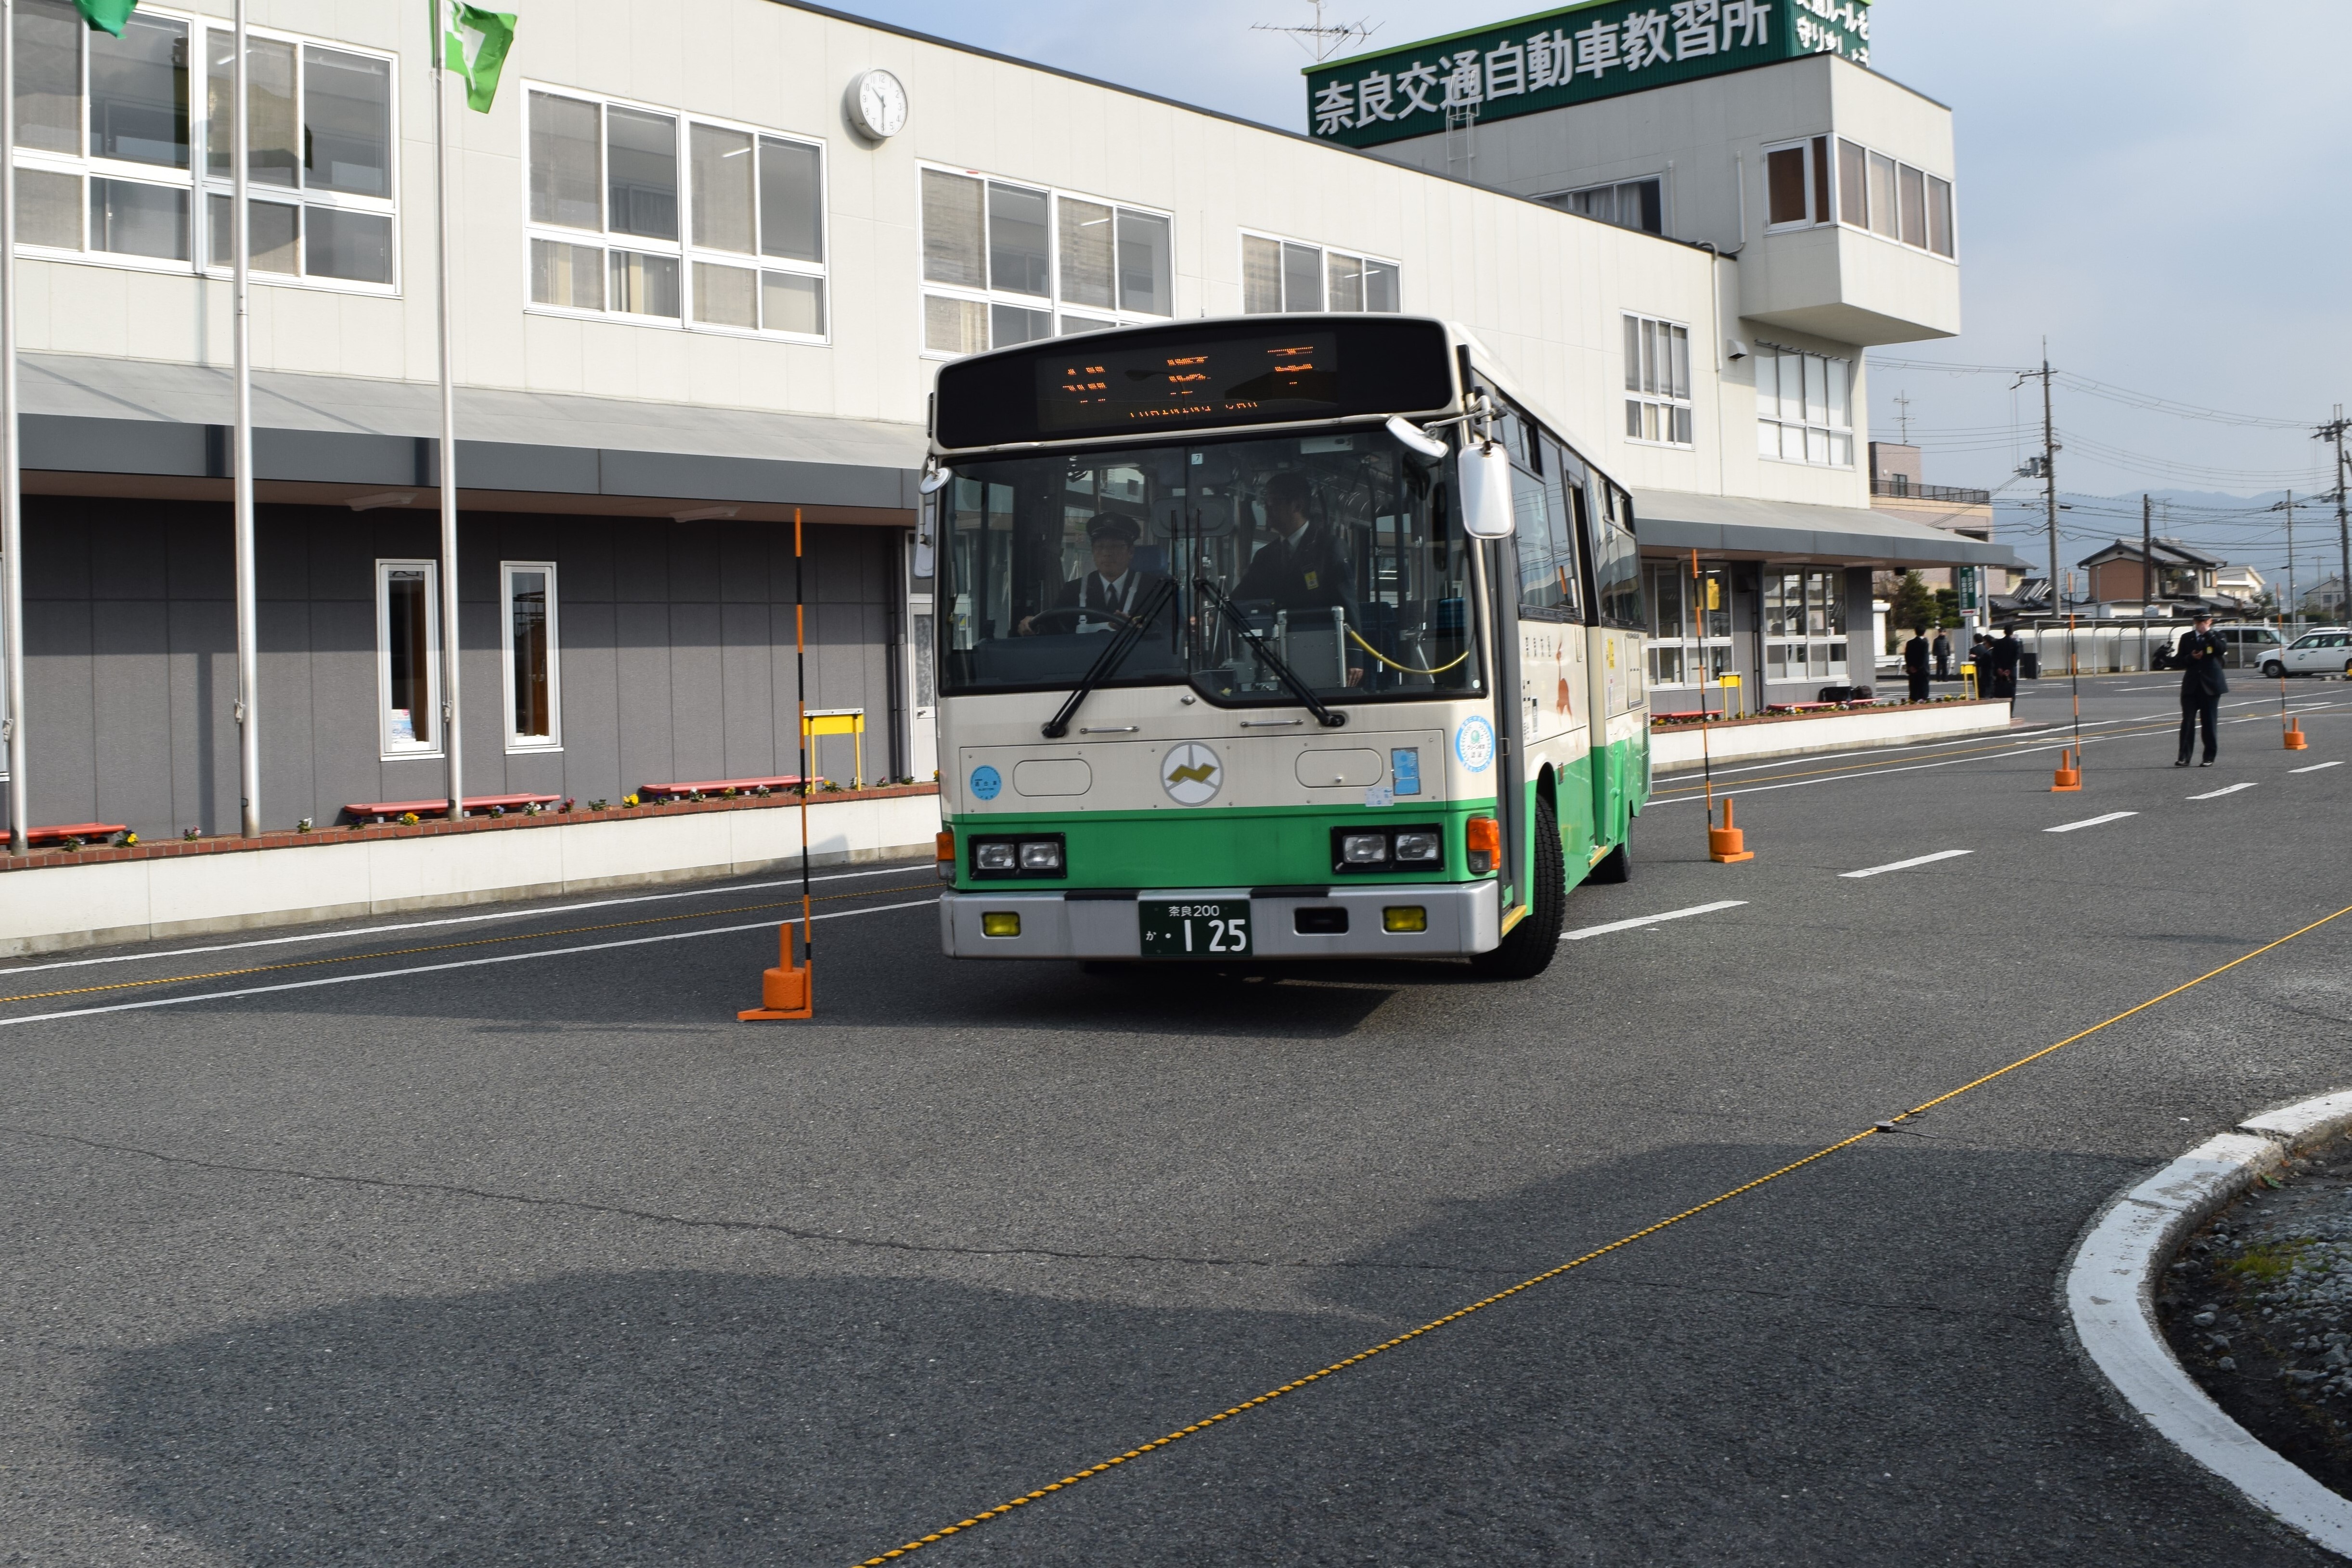 奈良交通 バス安全運転研修会 の開催について 奈良交通株式会社のプレスリリース